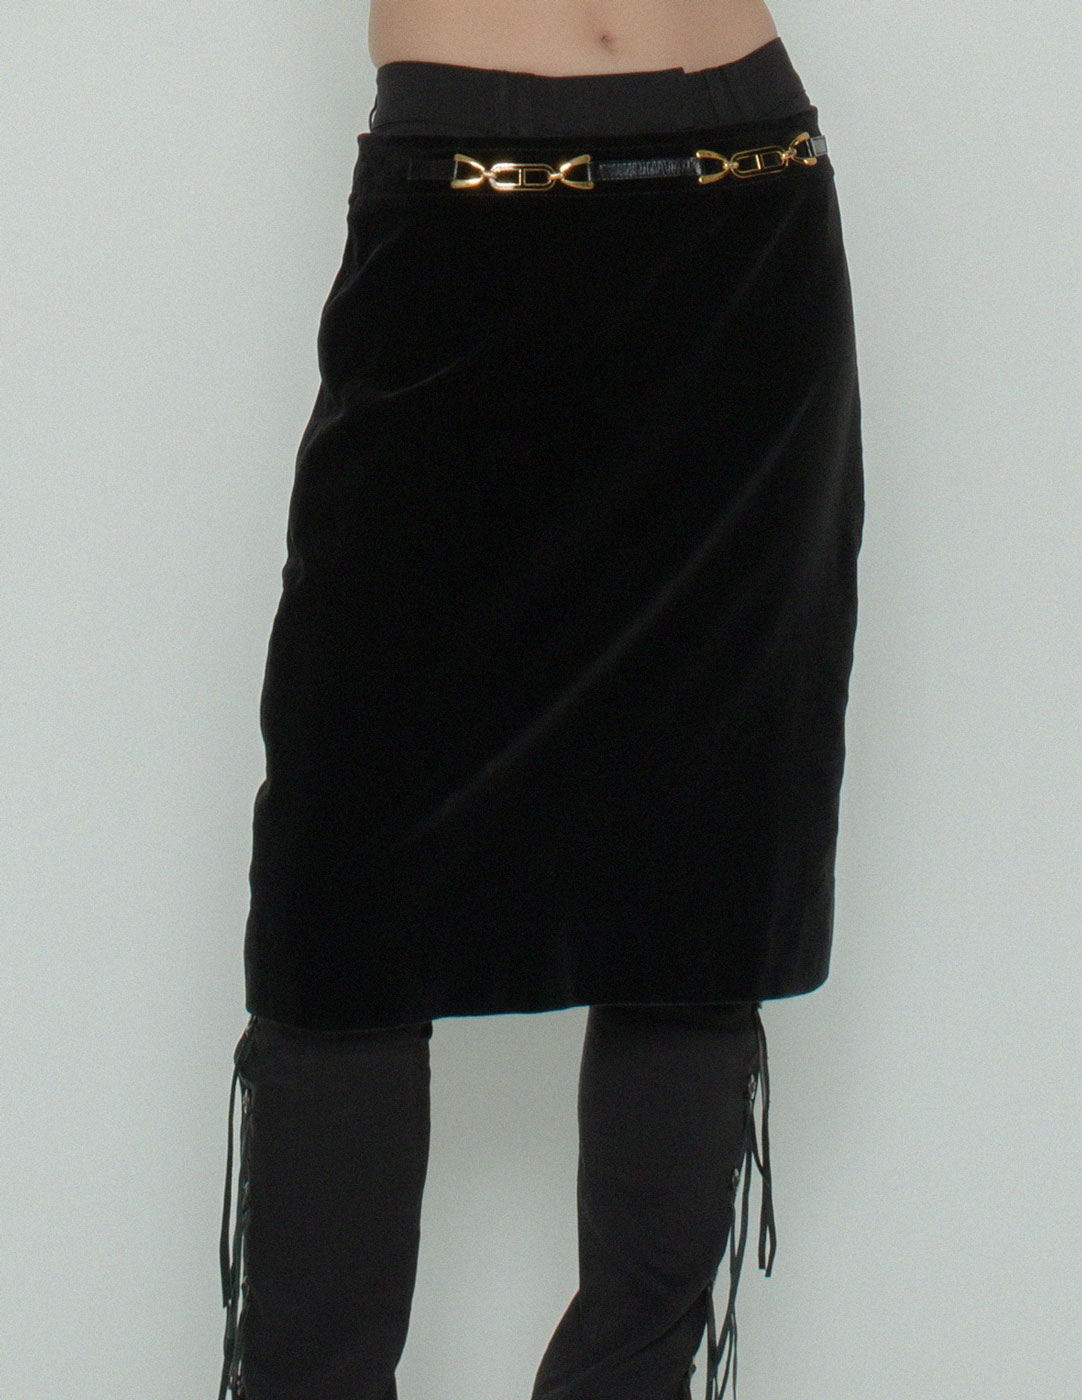 Celine vintage black velvet skirt front detail